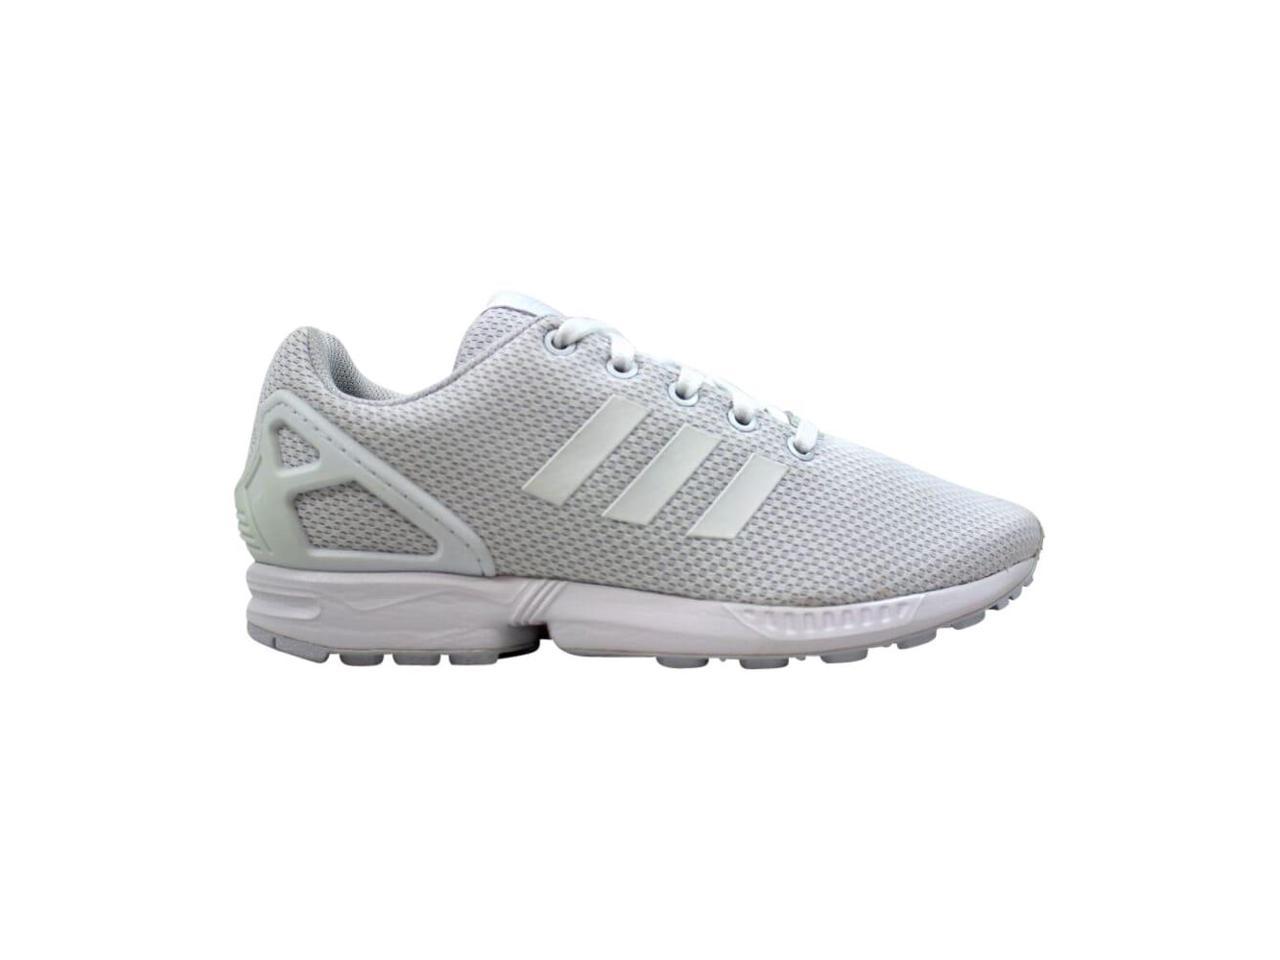 Adidas ZX Flux J Footwear White S81421 